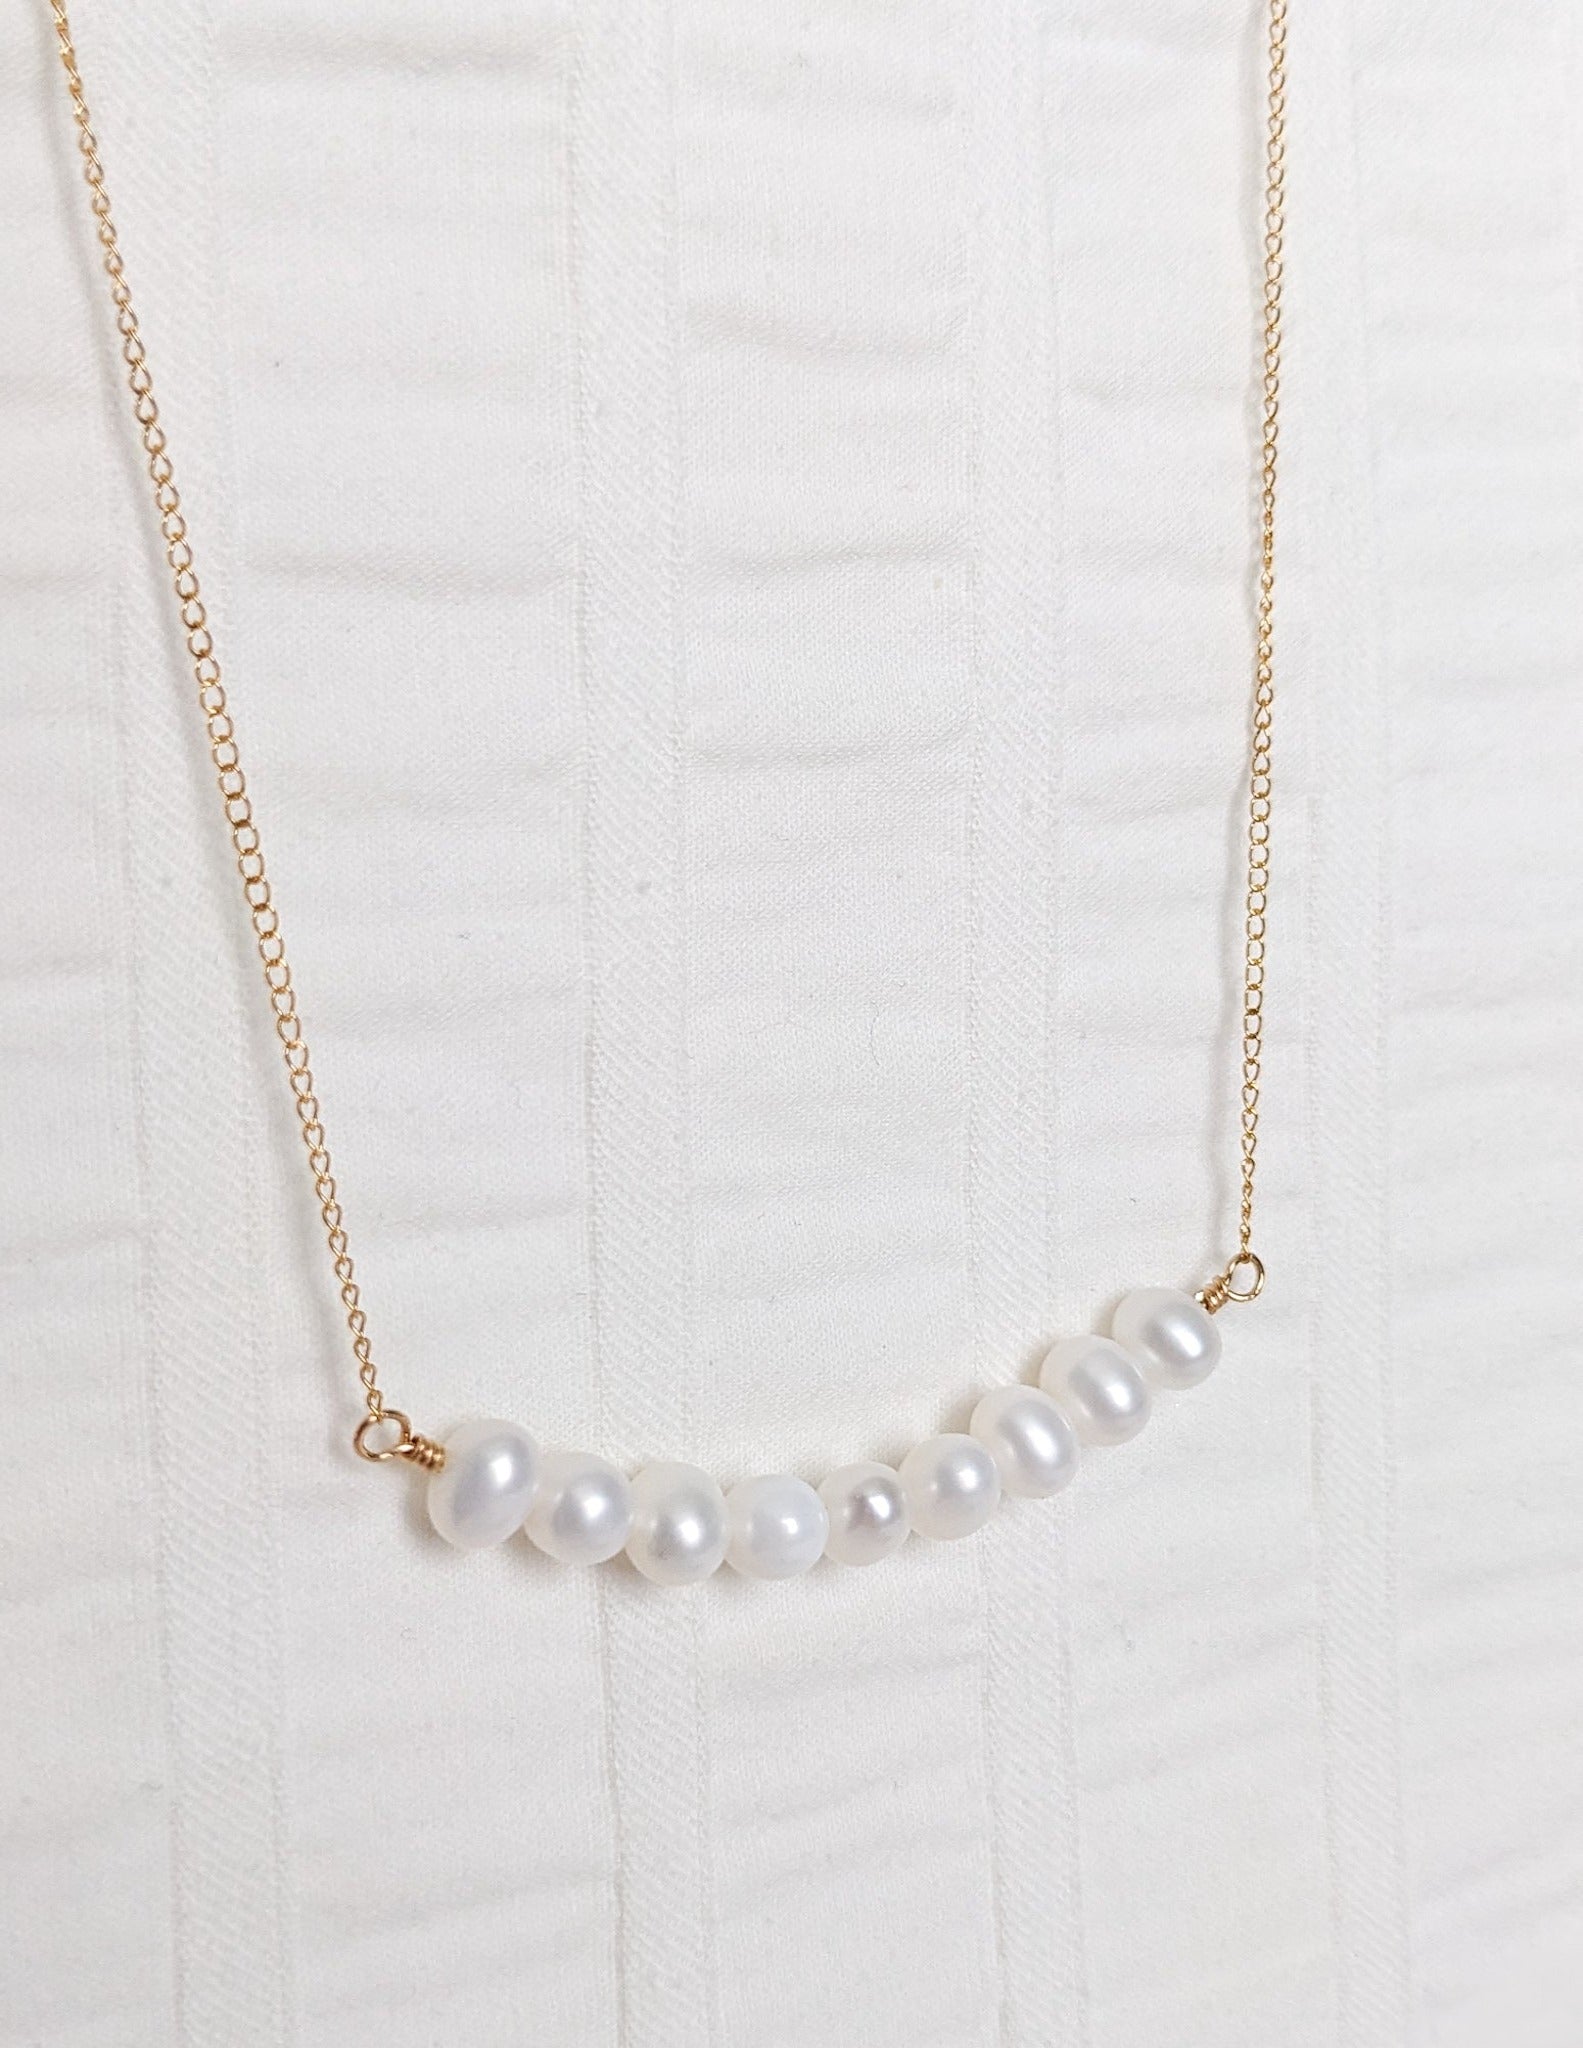 Collier pour femmes, gold filled 14k, perles d'eau douce